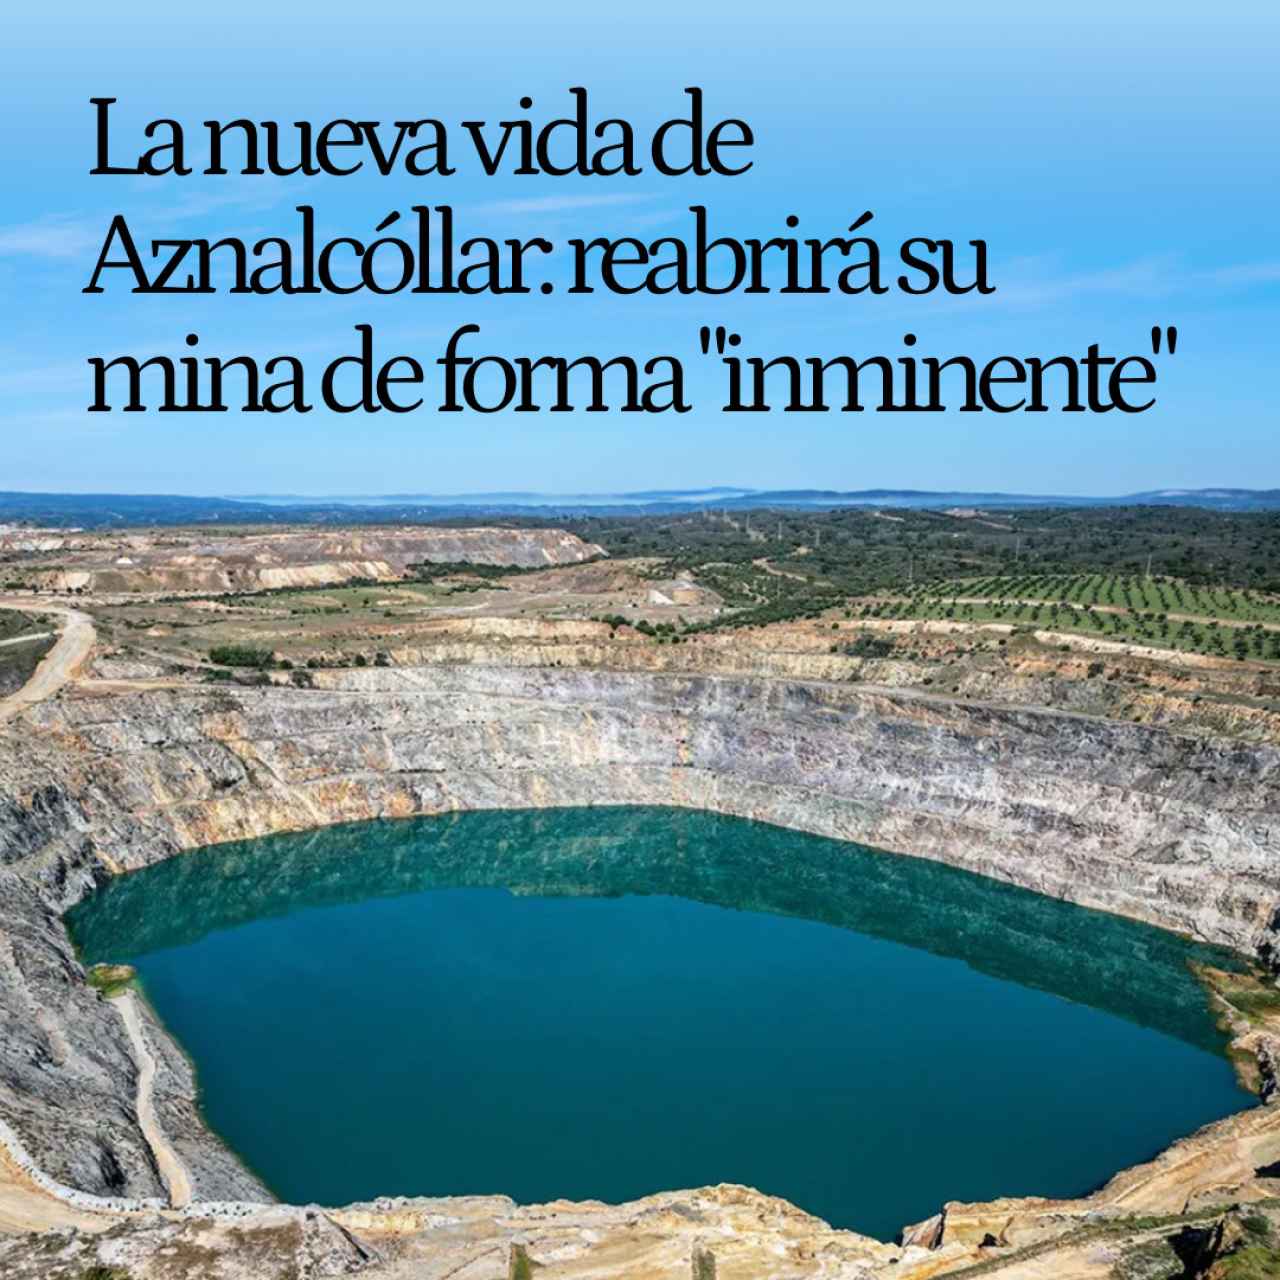 La nueva vida de Aznalcóllar, 'zona cero' del mayor desastre ecológico de Doñana: reabrirá su mina de forma 